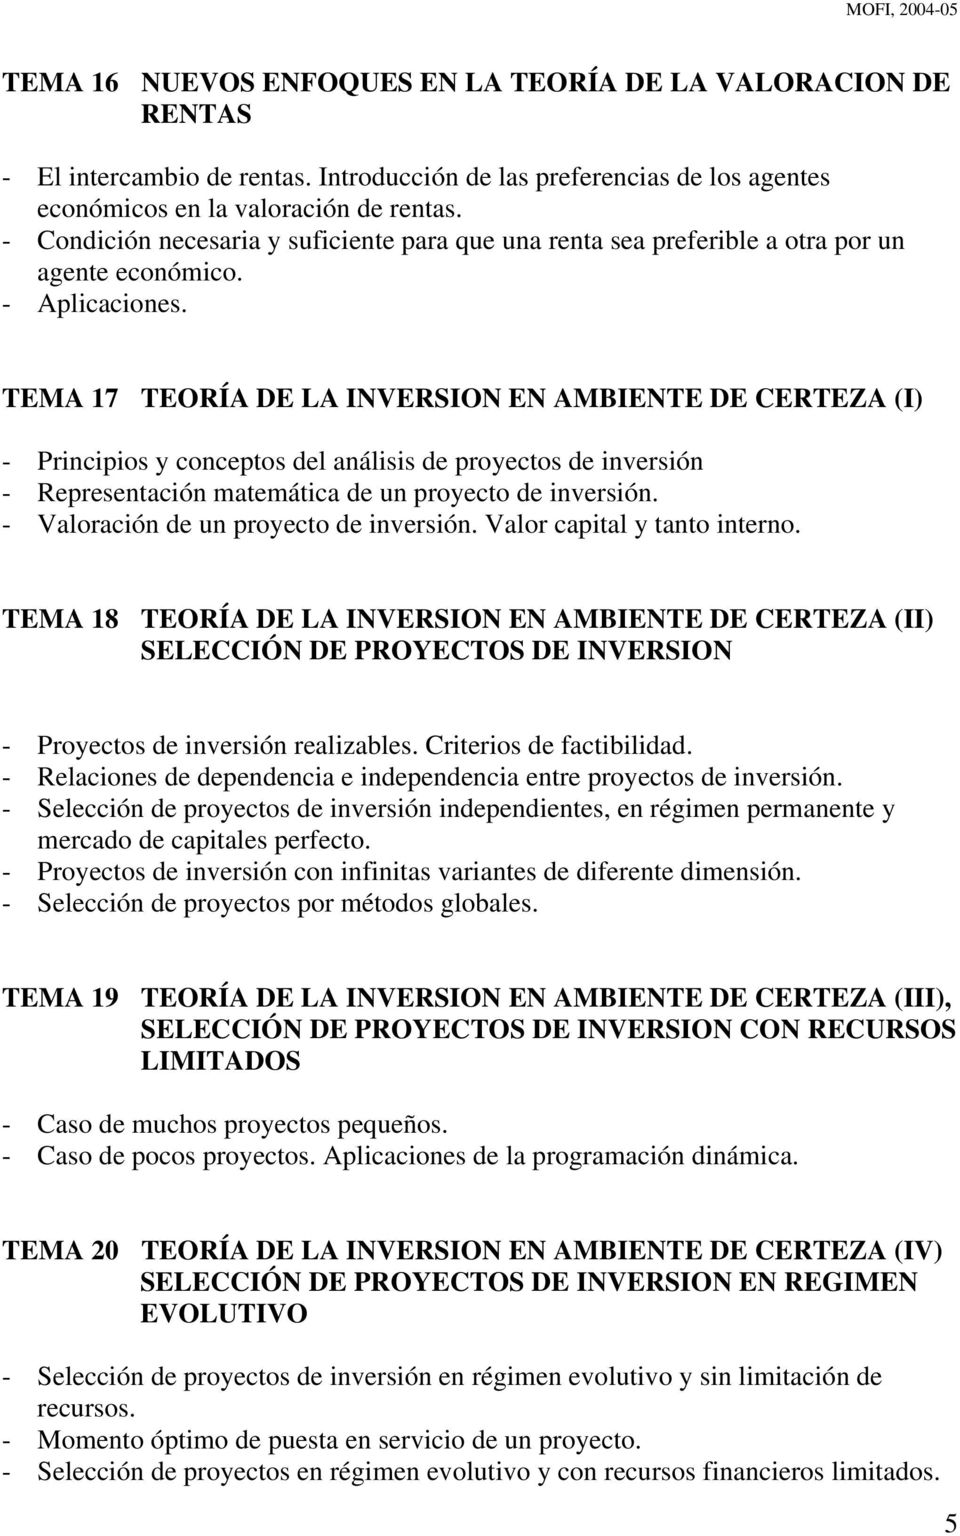 TEMA 17 TEORÍA DE LA INVERSION EN AMBIENTE DE CERTEZA (I) - Principios y conceptos del análisis de proyectos de inversión - Representación matemática de un proyecto de inversión.